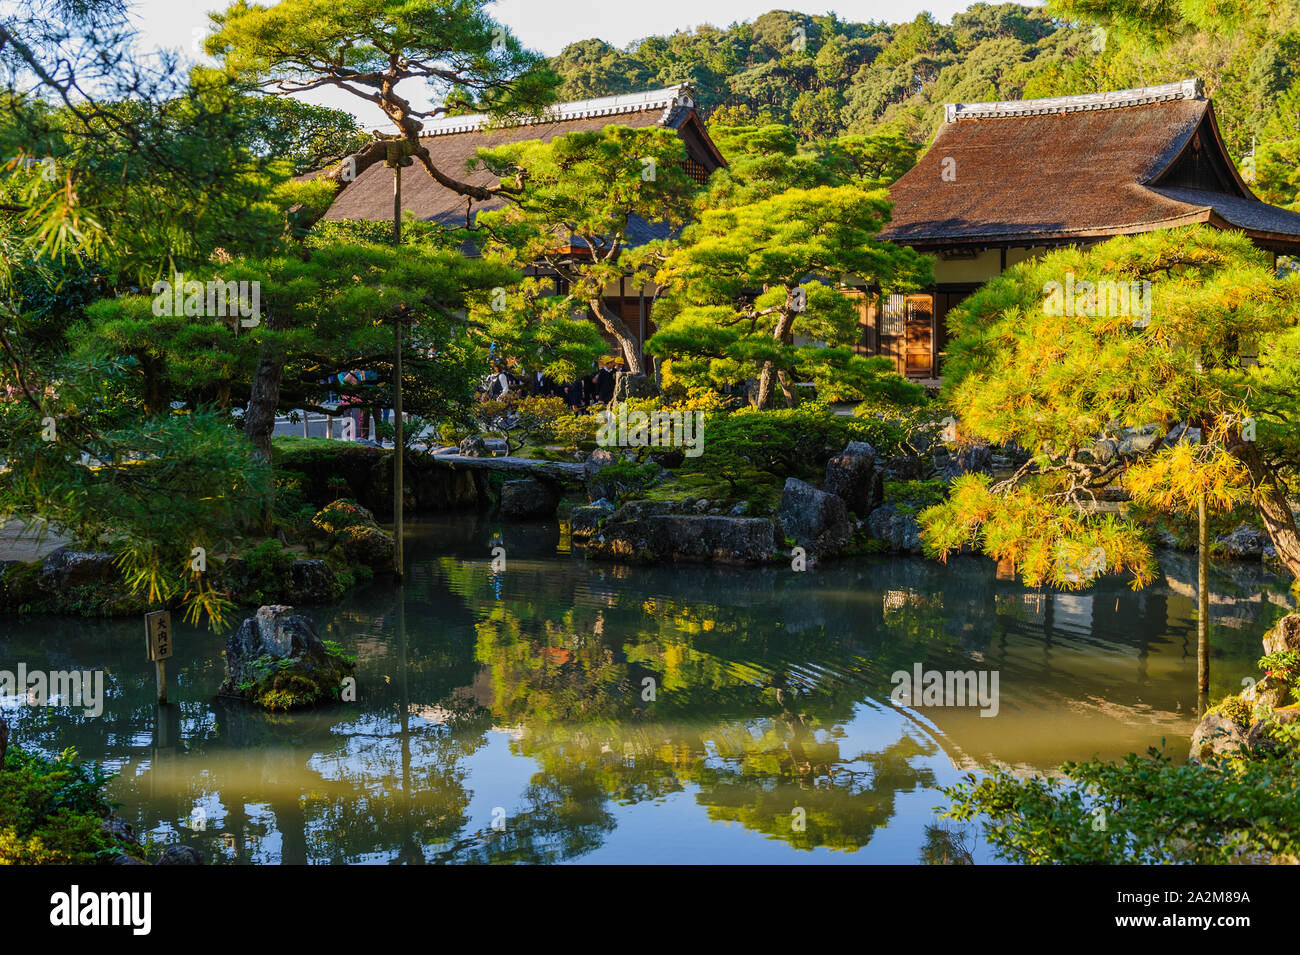 Impressions du soir de Ginkaku-ji (Temple du pavillon d'argent) avec son merveilleux jardin dans de belles couleurs de l'automne brillant, Kyoto Japon Banque D'Images